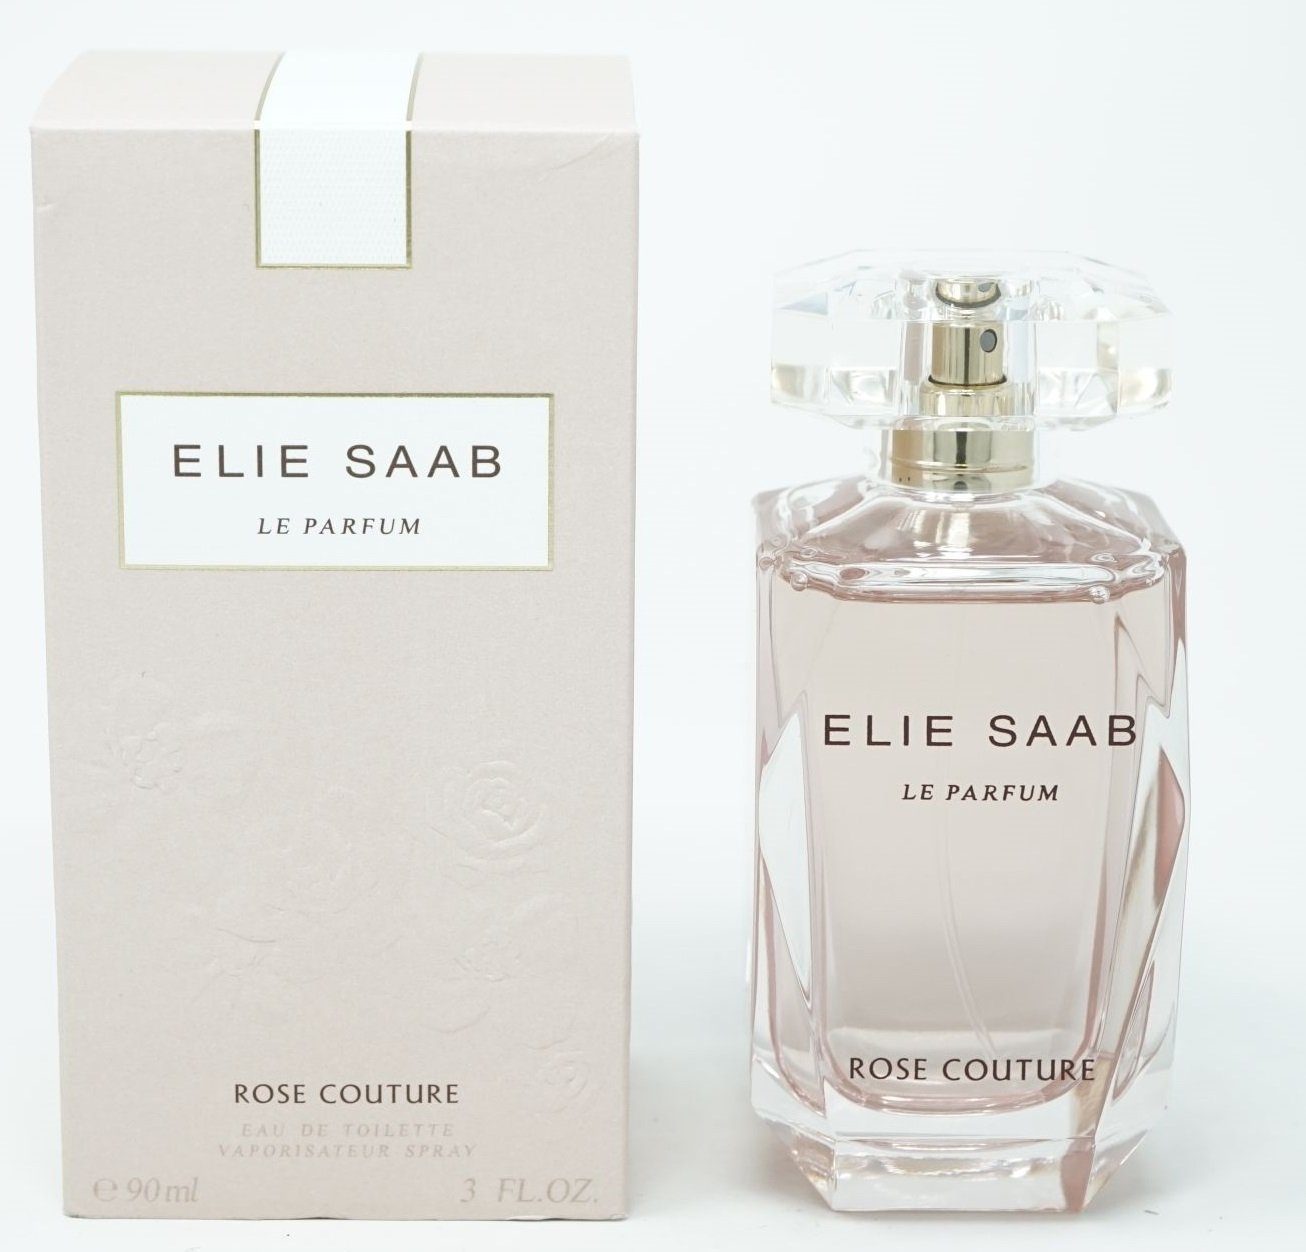 ELIE SAAB Eau de Toilette Elie Saab Le Parfum Rose Couture Eau de Toilette Spray 90ml